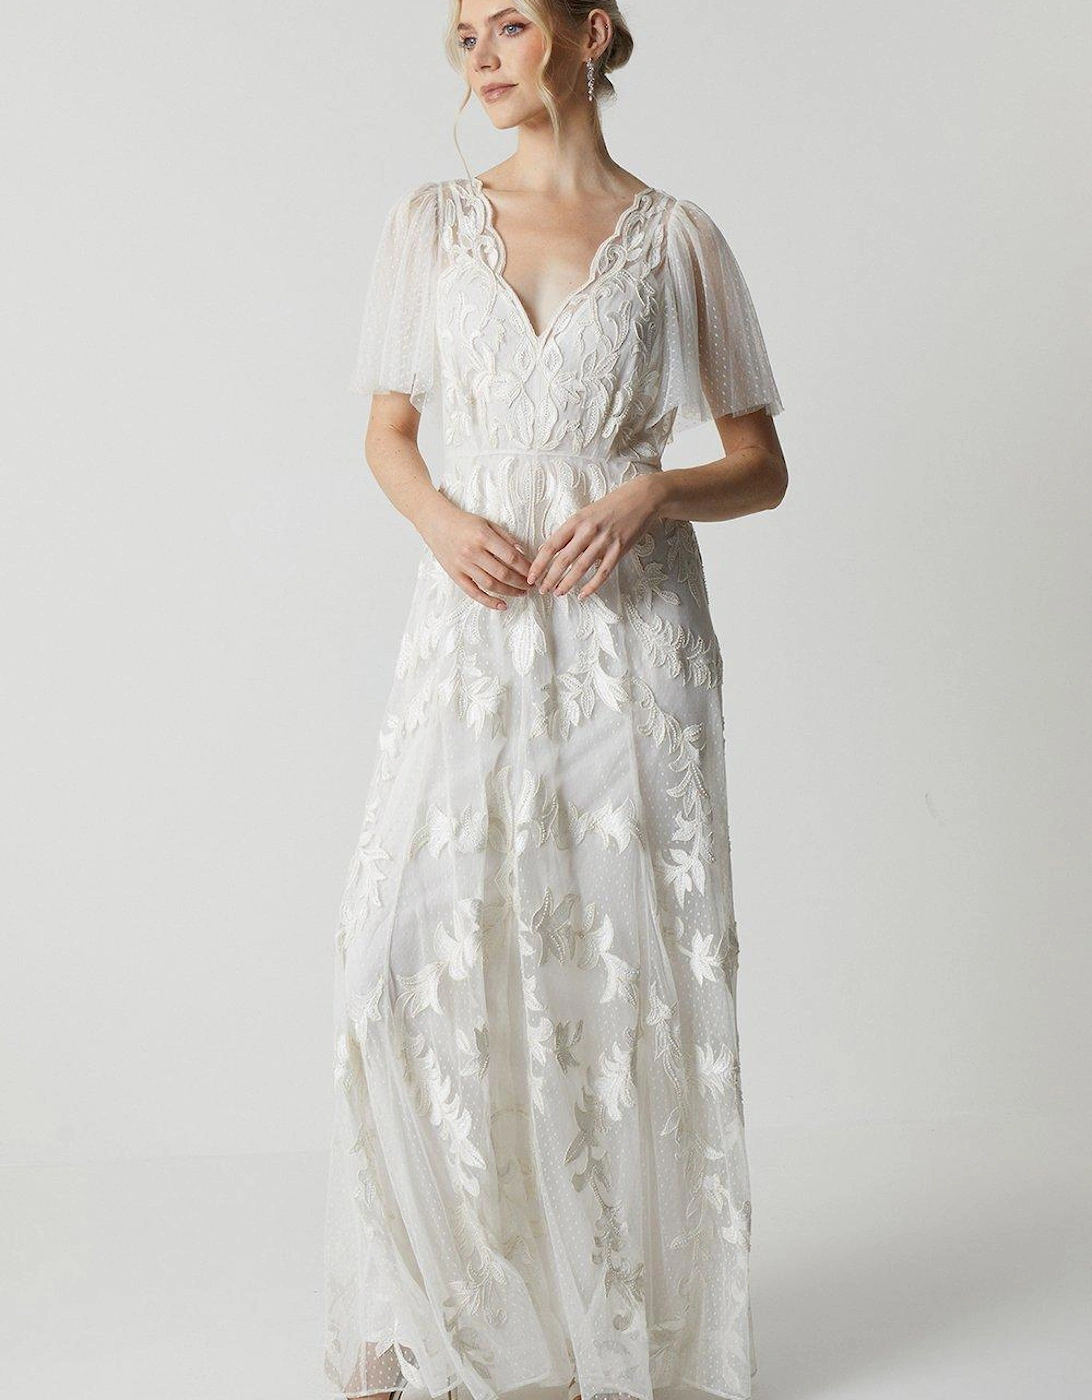 Premium Lace Overlay Embellished Wedding Dress, 5 of 4